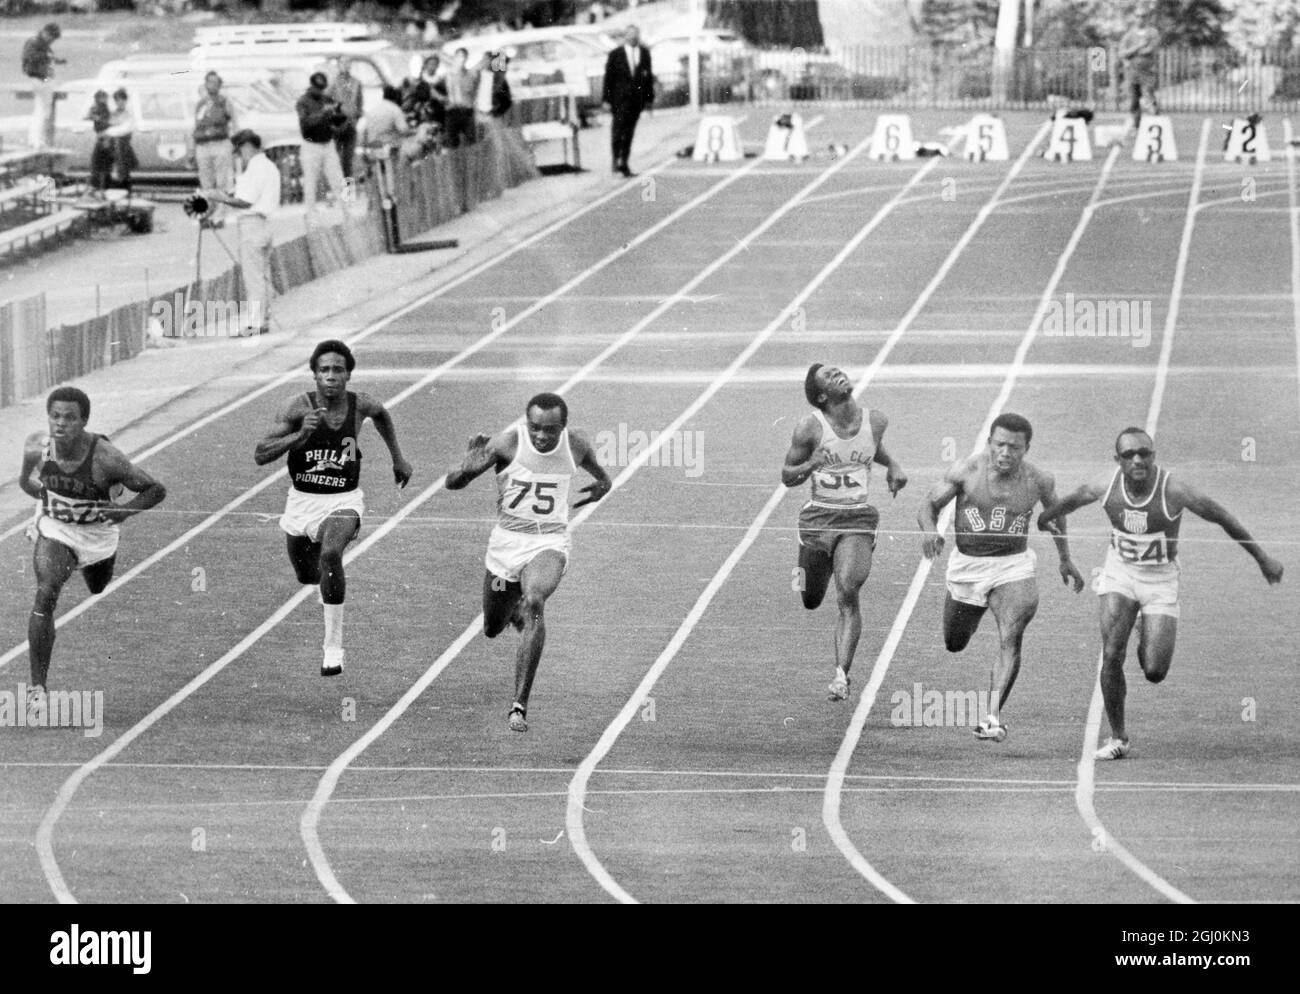 South Lake Tahoe, California: El final de los 100 metros durante los juicios olímpicos se reúnen aquí el 10th de septiembre muestra a Jimmie Hines, tercero de izquierda, a punto de romper la cinta con un tiempo ganador de 10 segundos que empató el récord mundial existente. Los otros son, de izquierda a derecha: Clyde Glosson; Tom Randolph; Hines; Kirk Clayton; Mel Pender, 3rd con un tiempo de 10,2, y Charlie Green, 2nd con un tiempo de 10,1. 14th de septiembre de 1968 Foto de stock